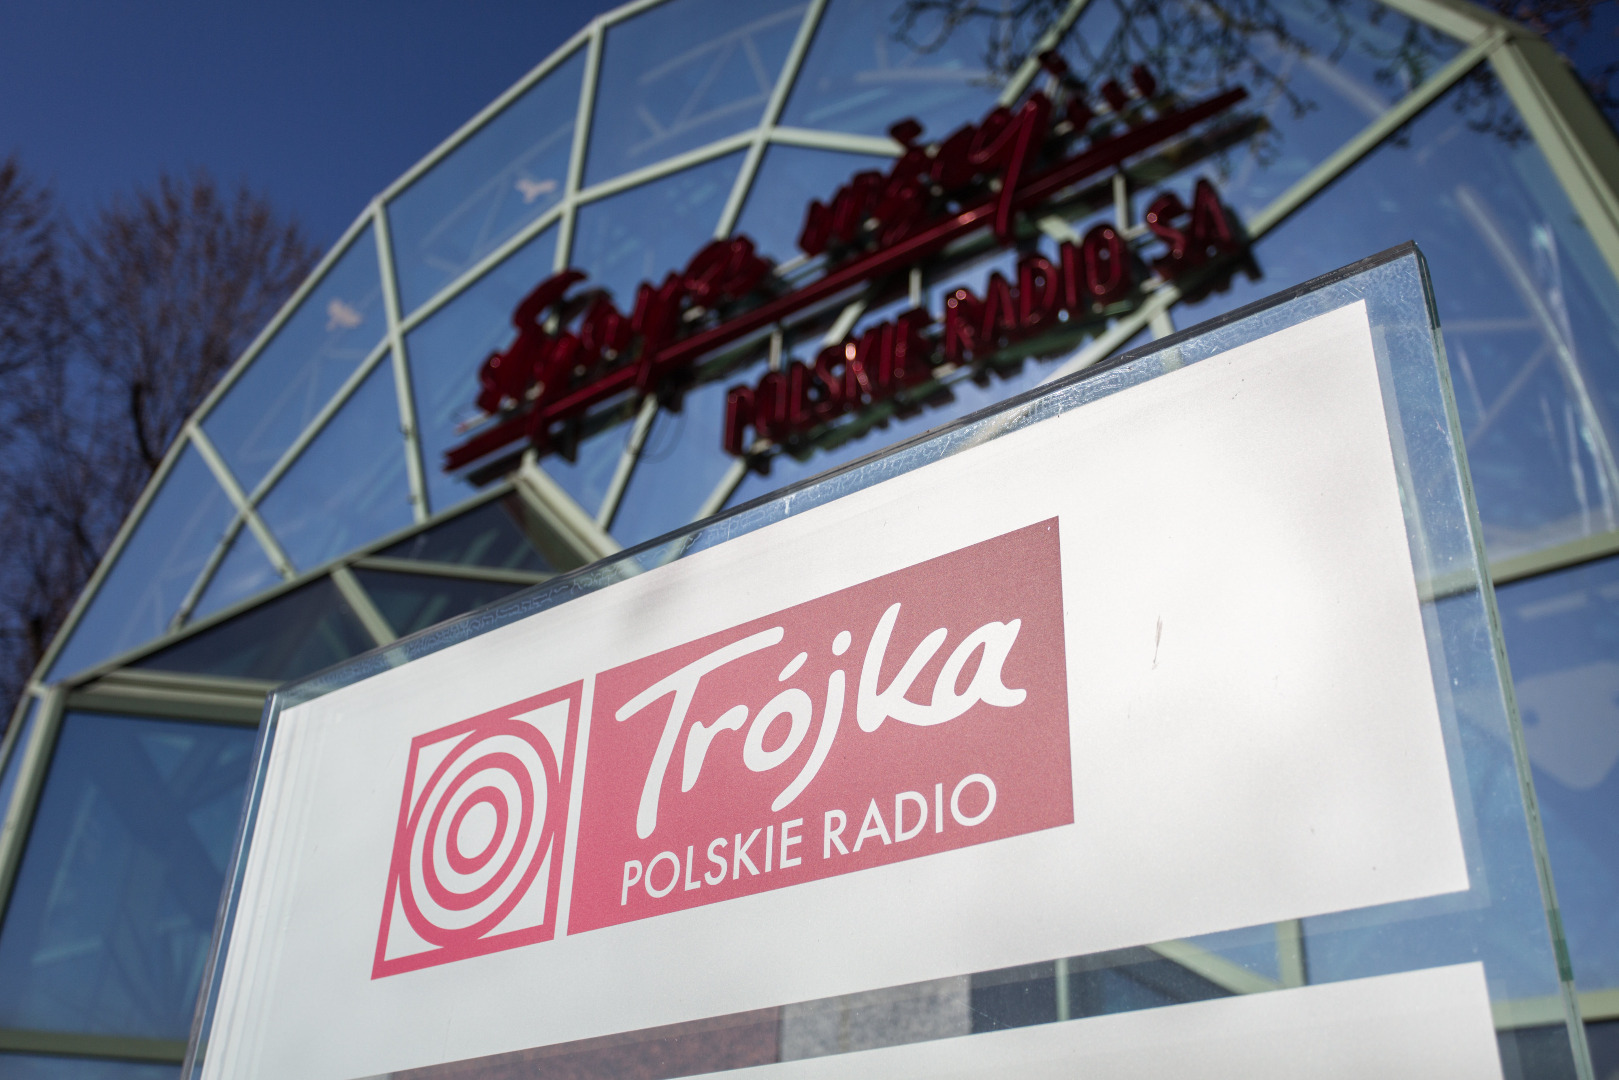 Szymaniak: Trójka to nie było jakieś tam radio, lecz radio, które było  jakieś [OPINIA] - GazetaPrawna.pl